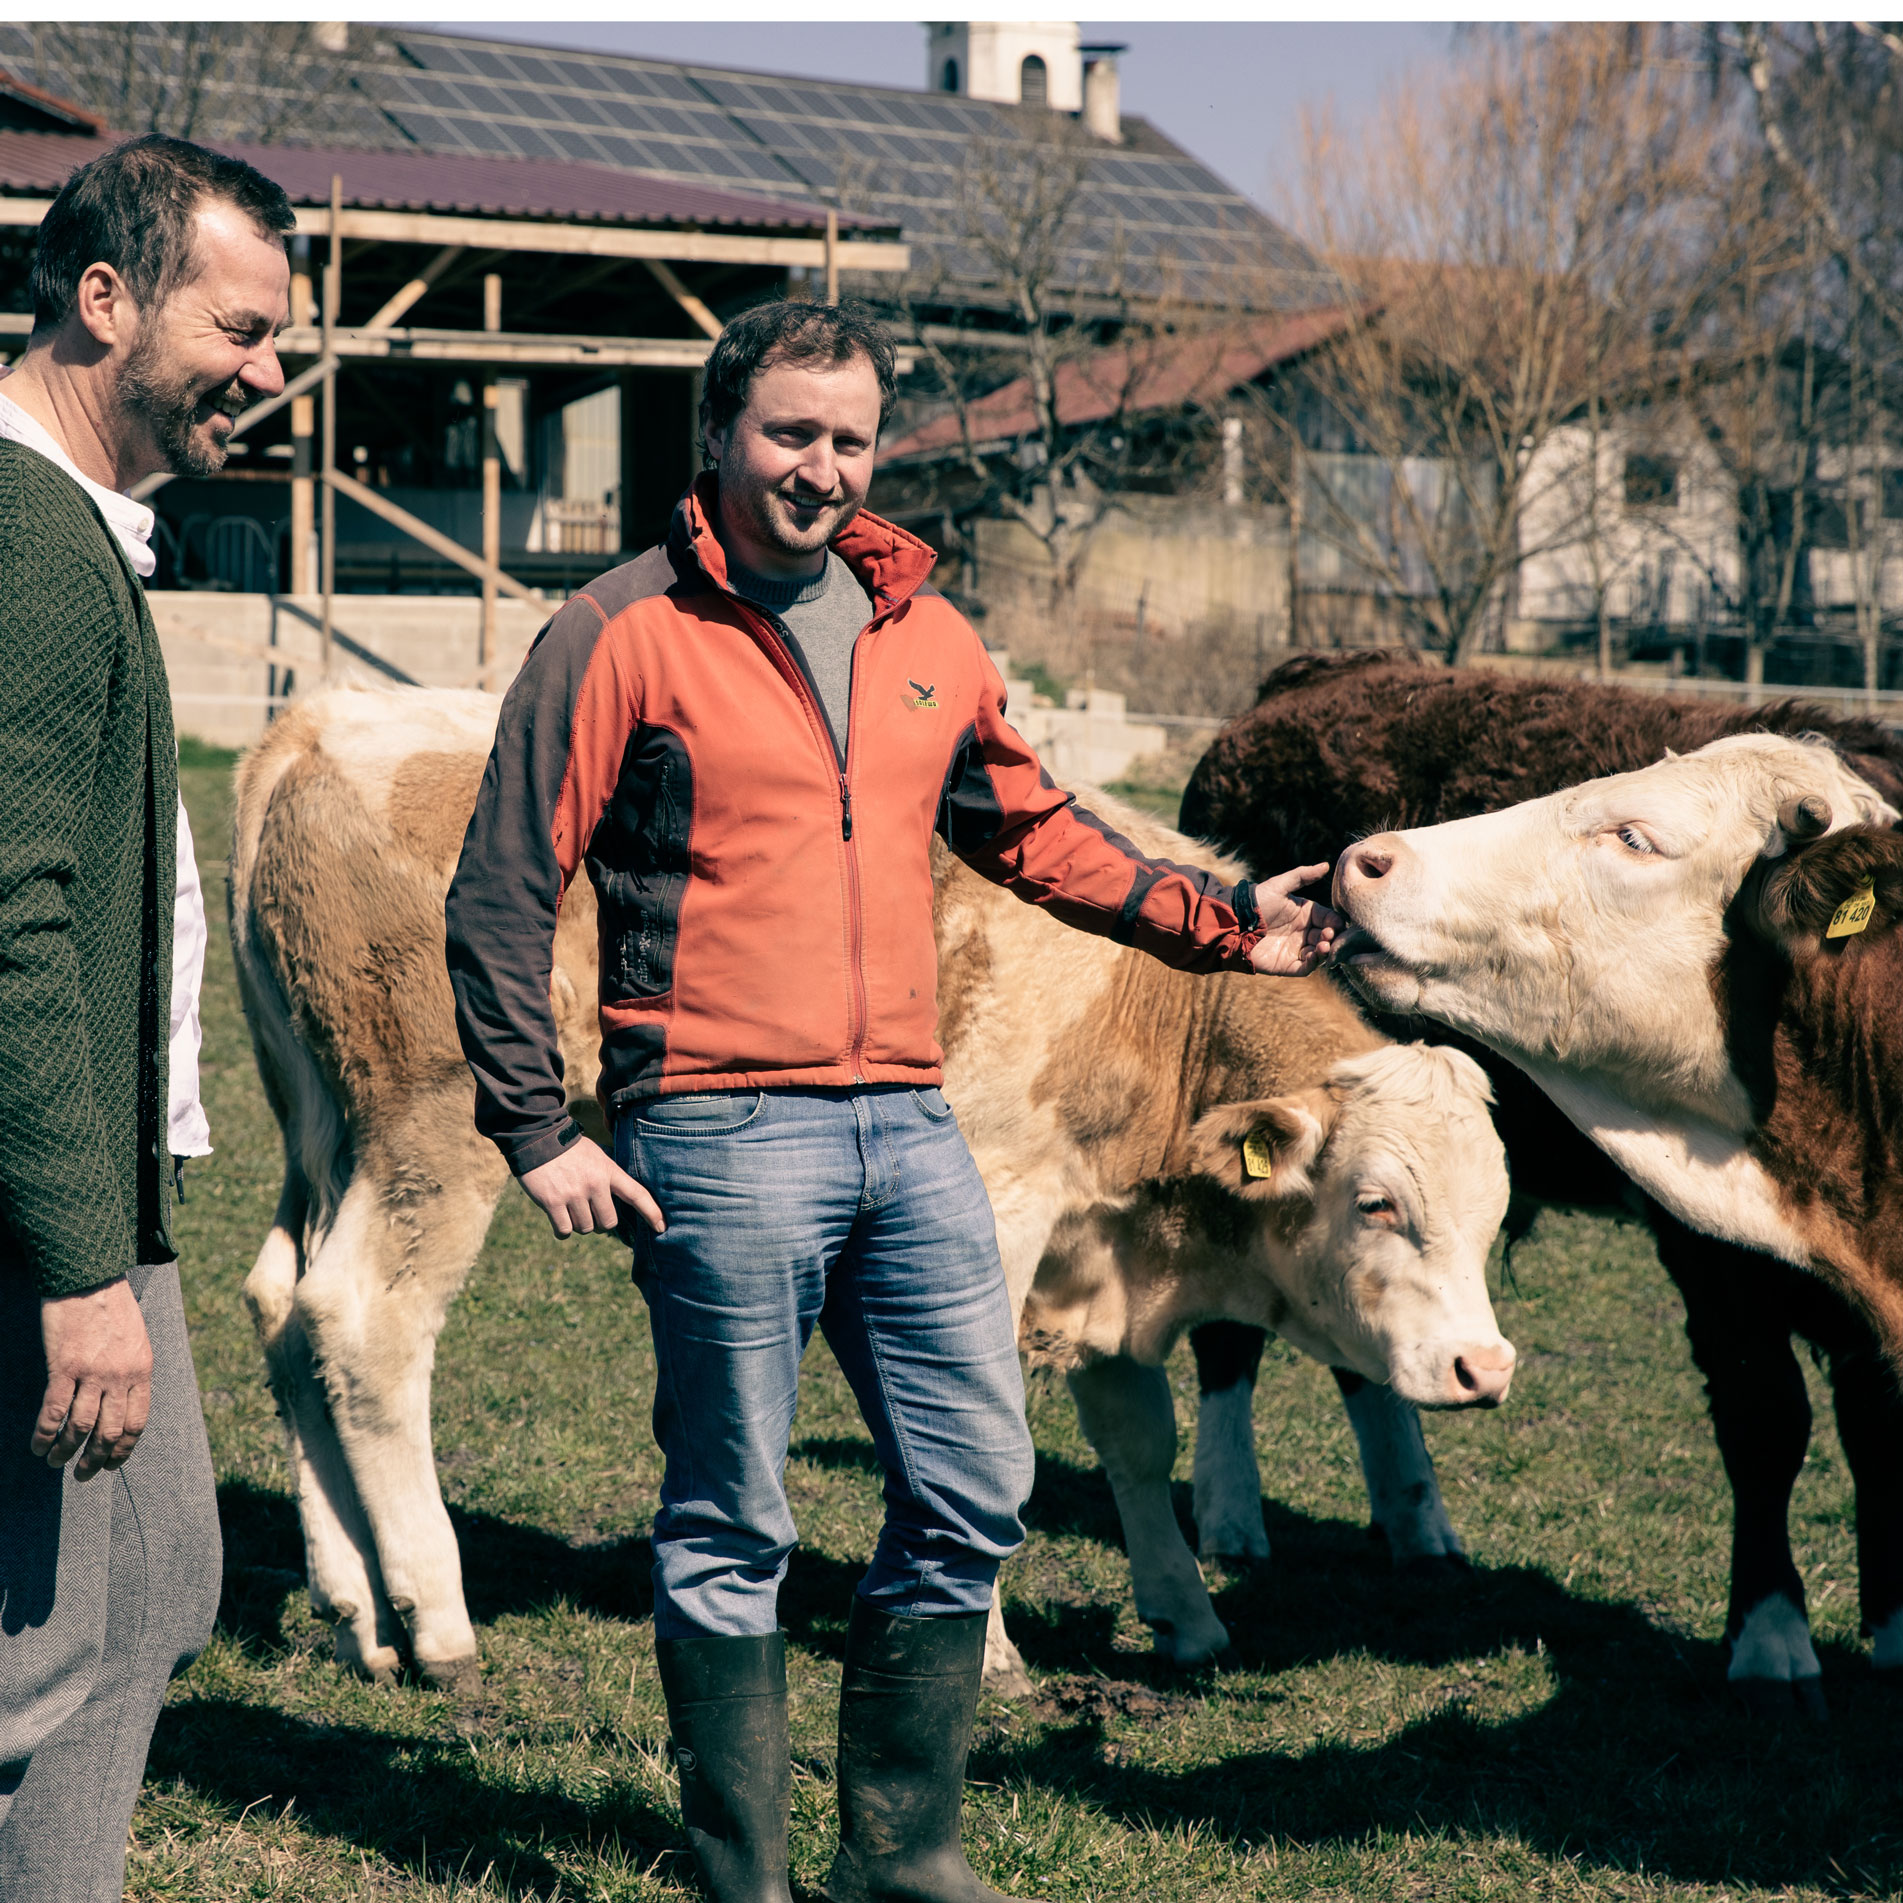 Alexander Tremmel und der Besitzer des Hofes stehen mit Rindern auf einer Wiese und streicheln diese.